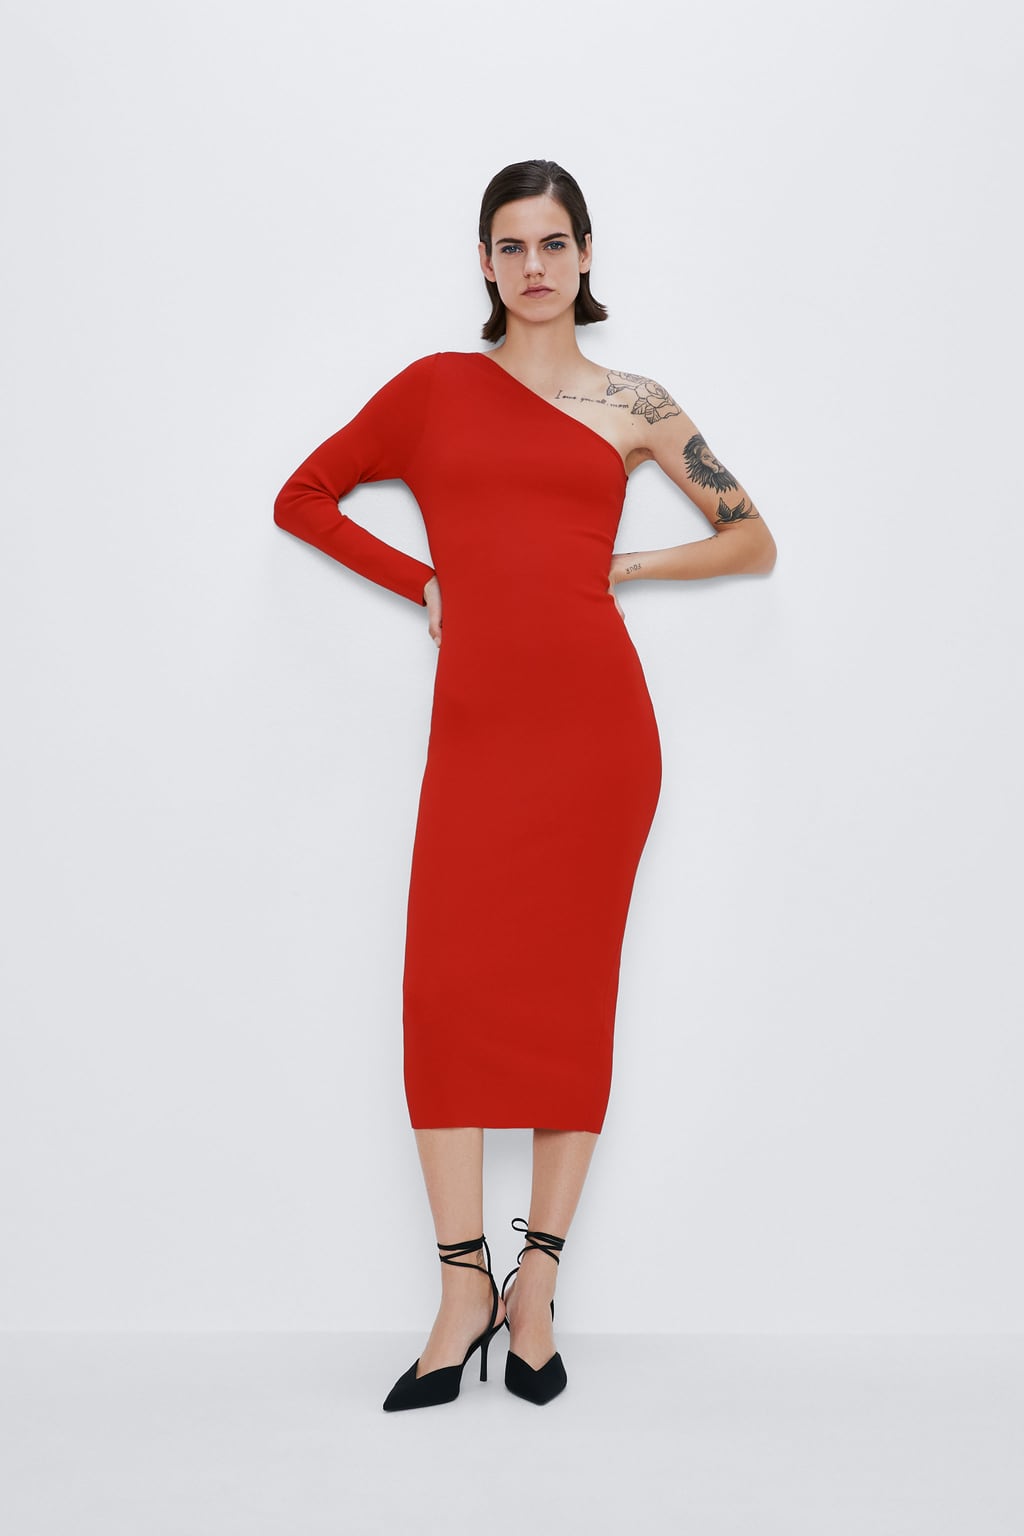 Oδηγός Αγοράς: 10 κόκκινα φορέματα για να μπεις στο εορταστικό κλίμα των ημερών